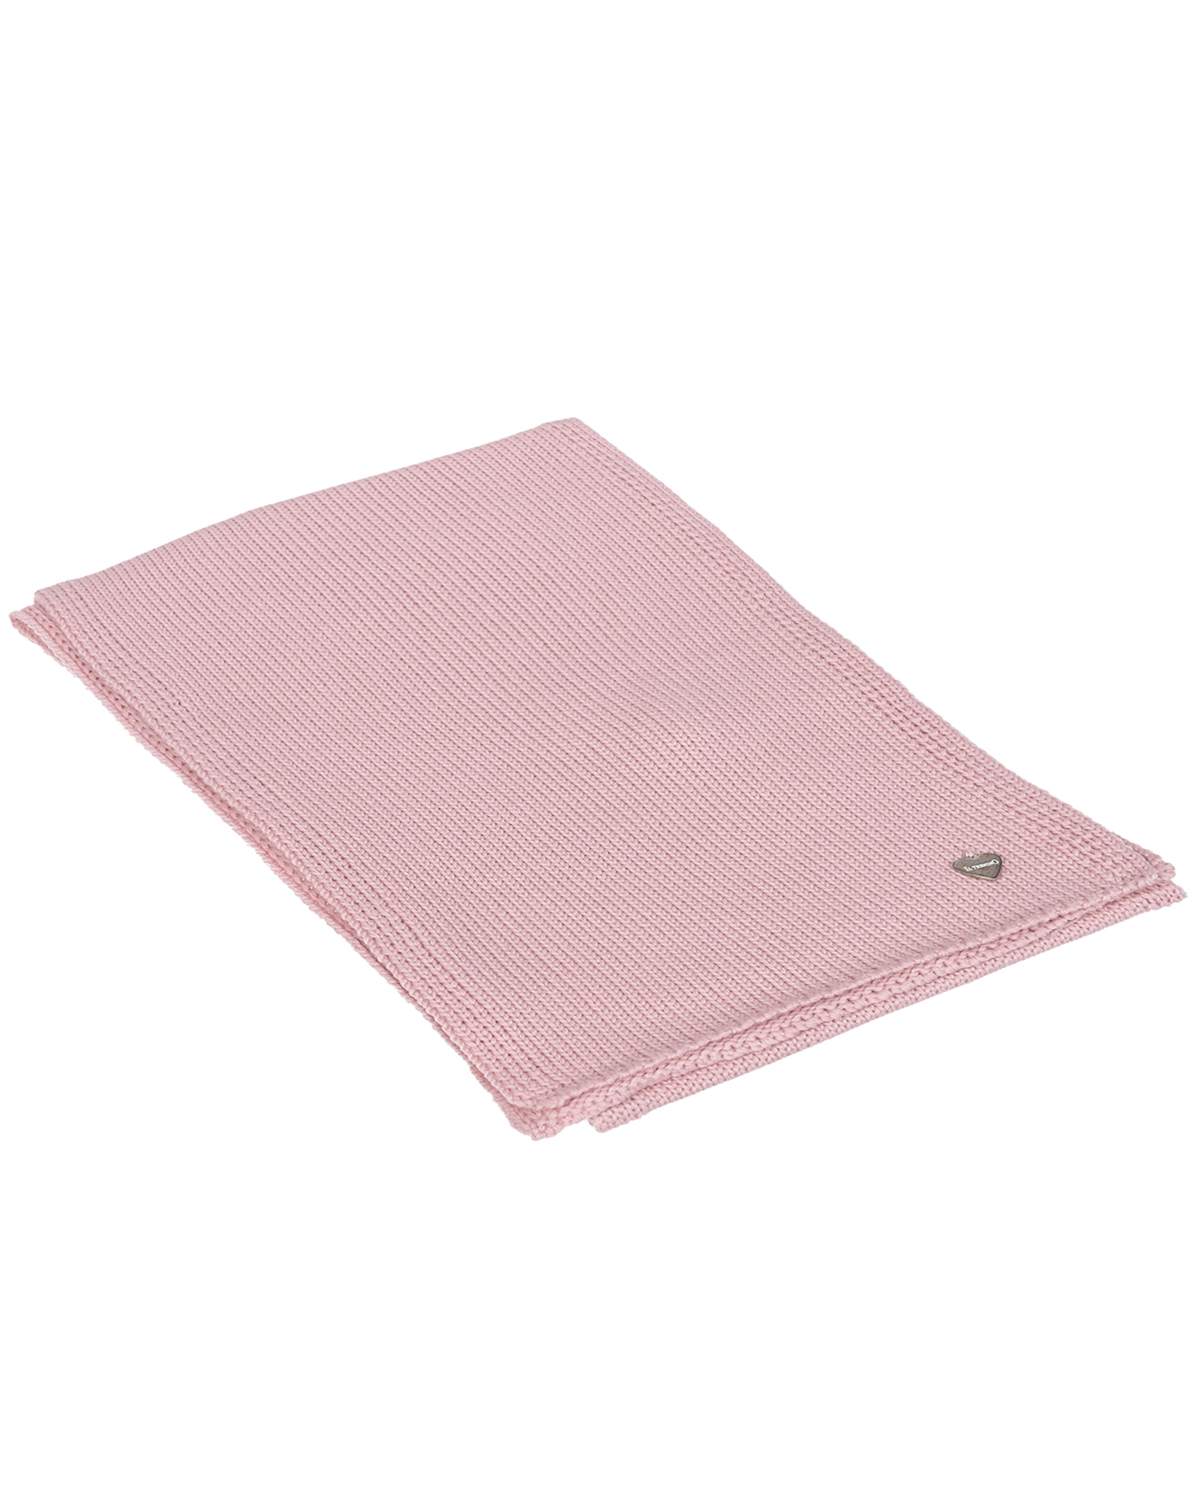 Розовый шарф из шерсти, 20х140 см Il Trenino детский, размер unica - фото 1